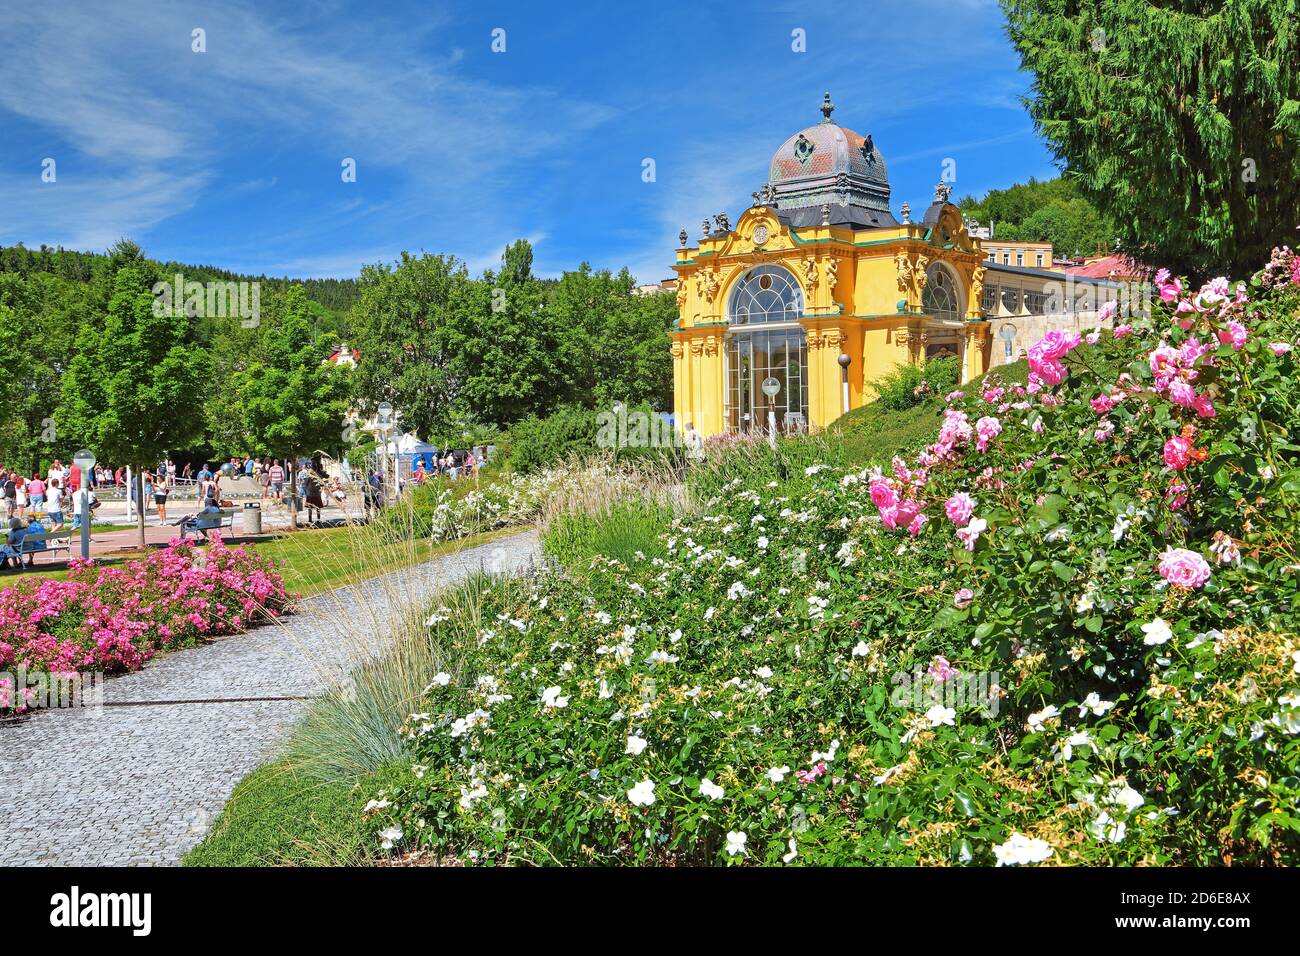 Les fleurs bordent le spa avec colonnade, Marienbad, triangle spa, Bohême, République Tchèque Banque D'Images